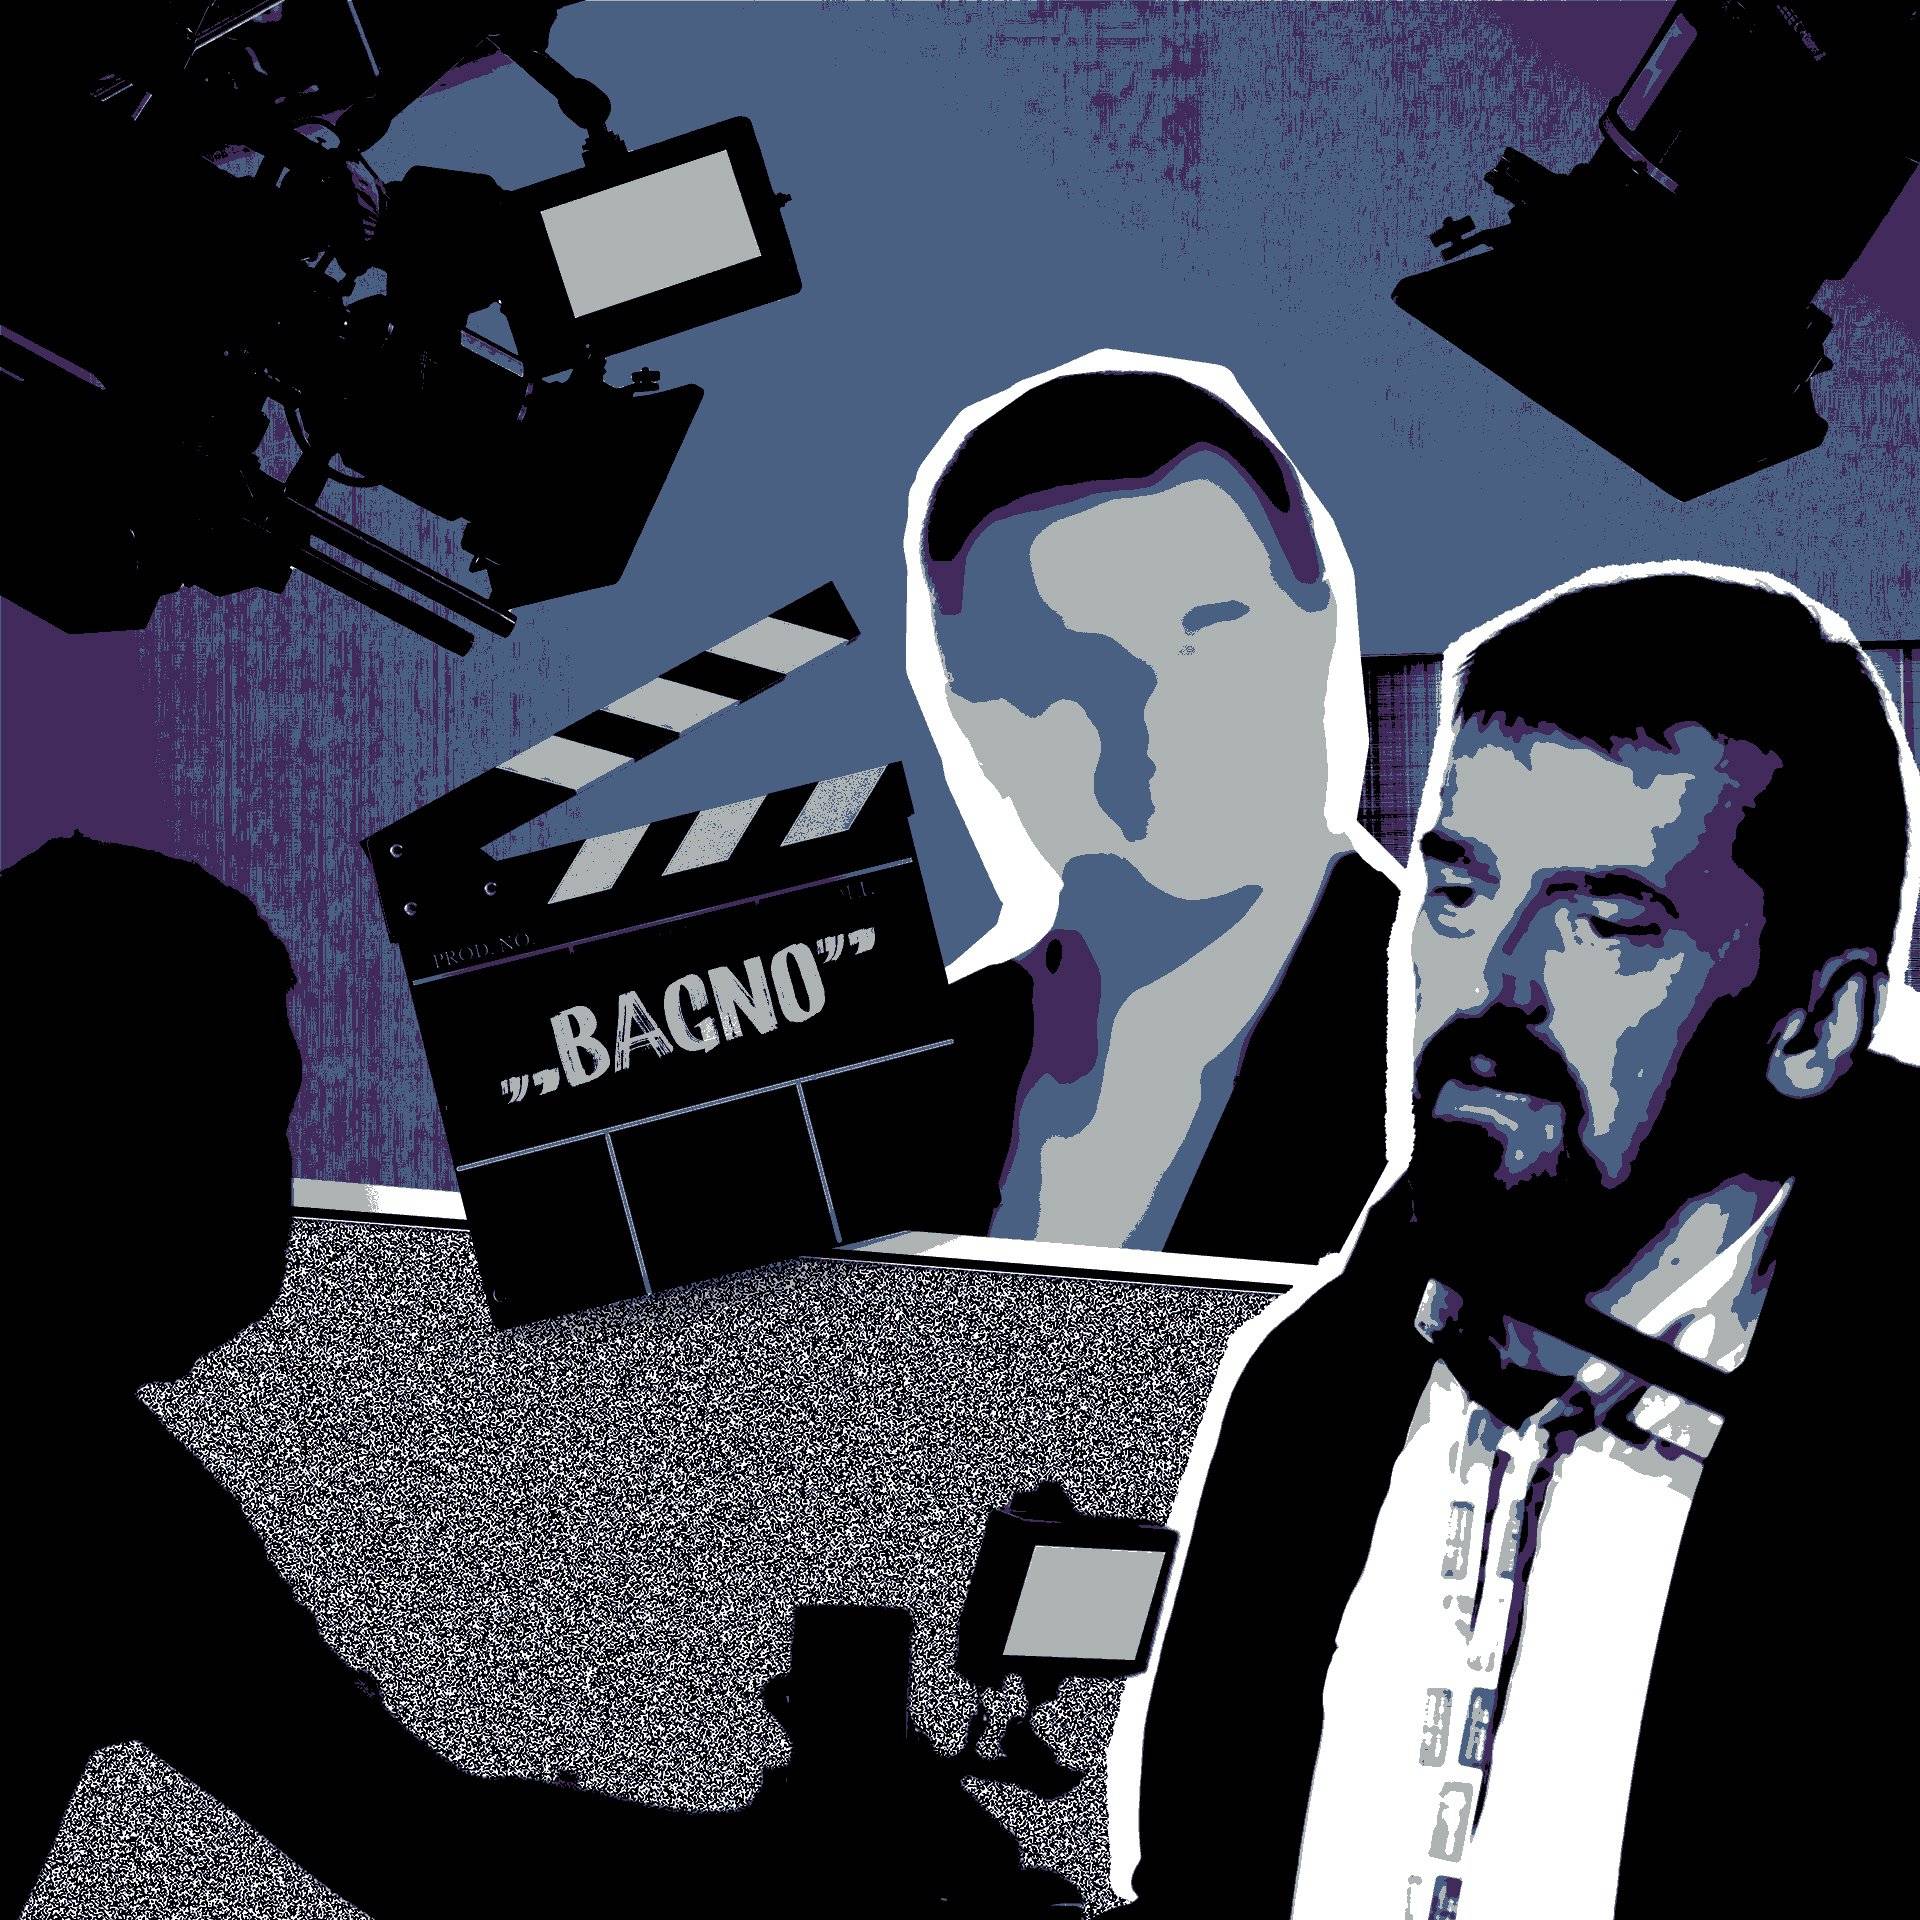 Ilustracja przedstawiająca biznesmena Janusza J. i Mariusza Zielke oraz klaps z nazwą filmu "Bagno"